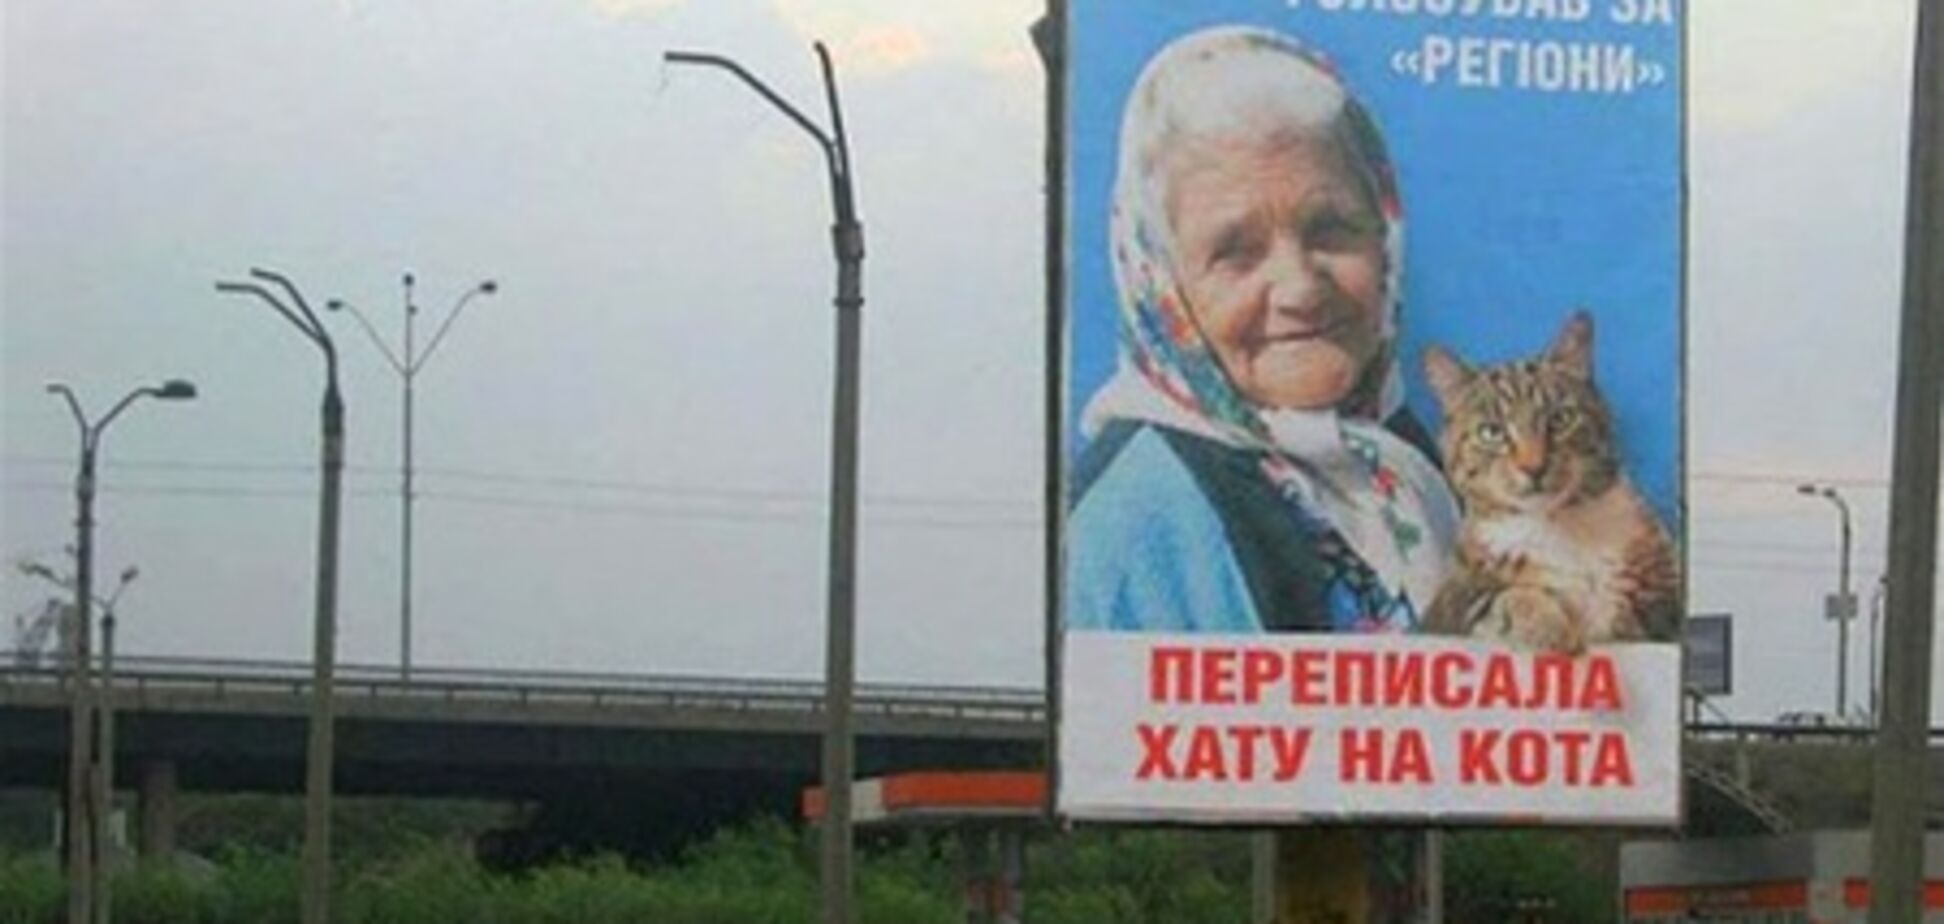 Автору билборда с бабушкой и котом грозит 5 лет тюрьмы